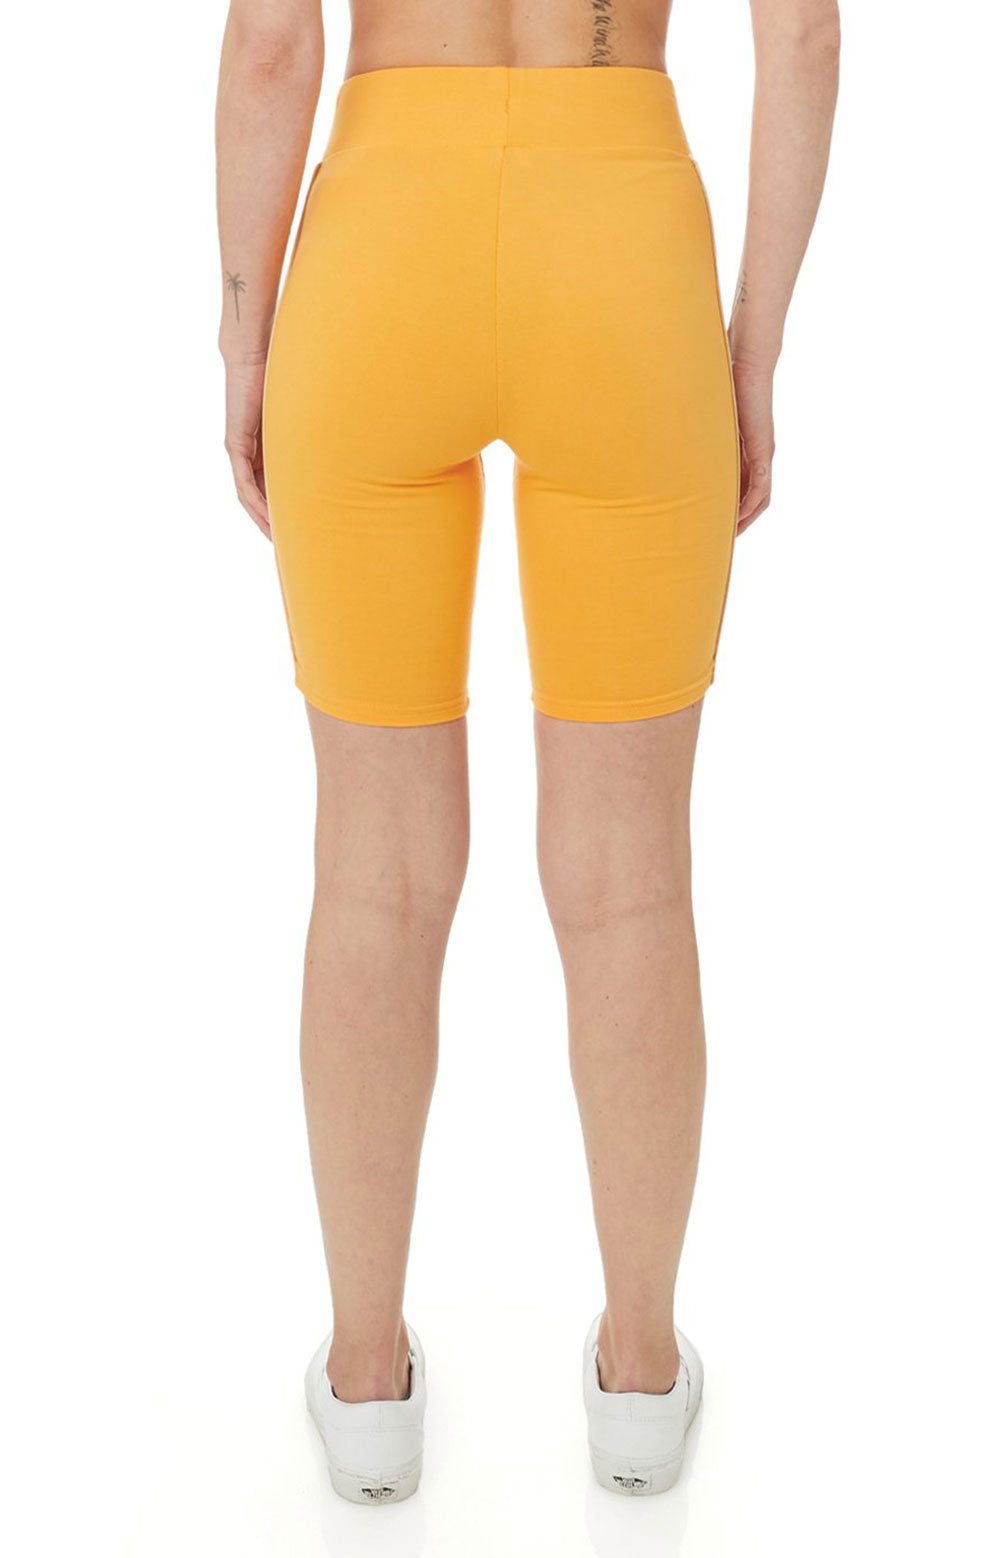 222 Banda Utuado Bike Shorts - Yellow